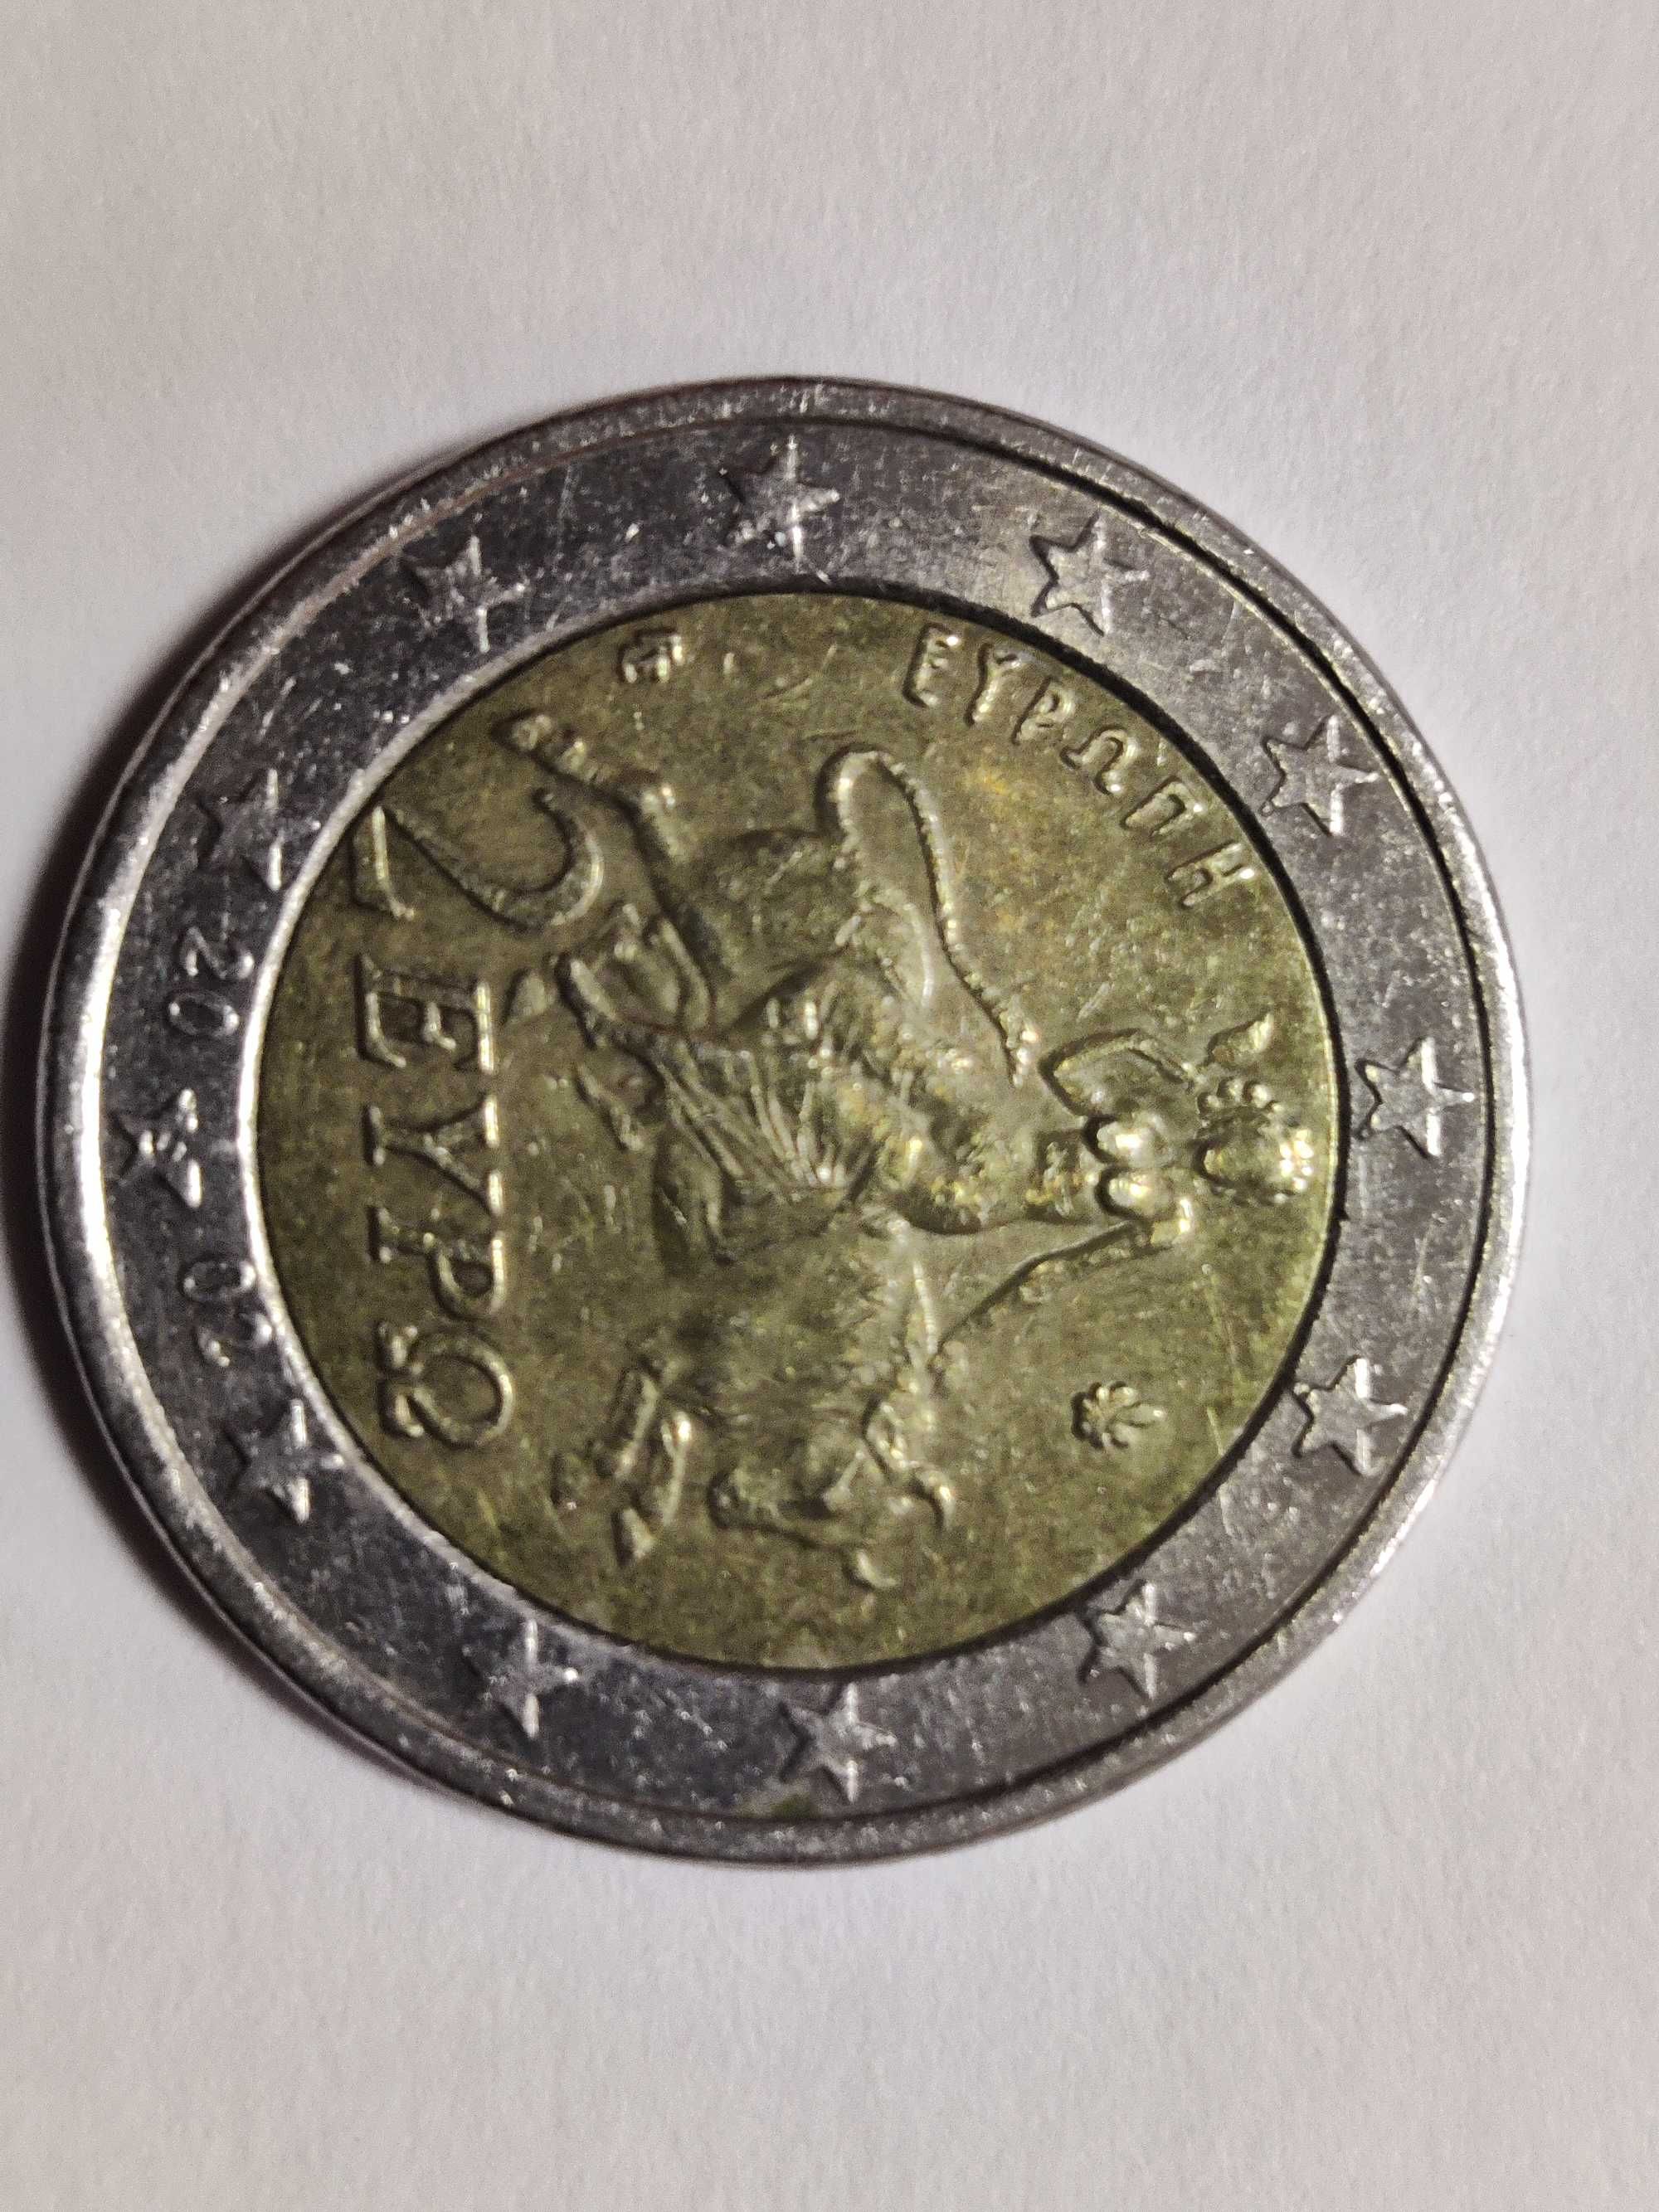 Moedas de 2 comemorativas e moeda de 2 grega com "s"